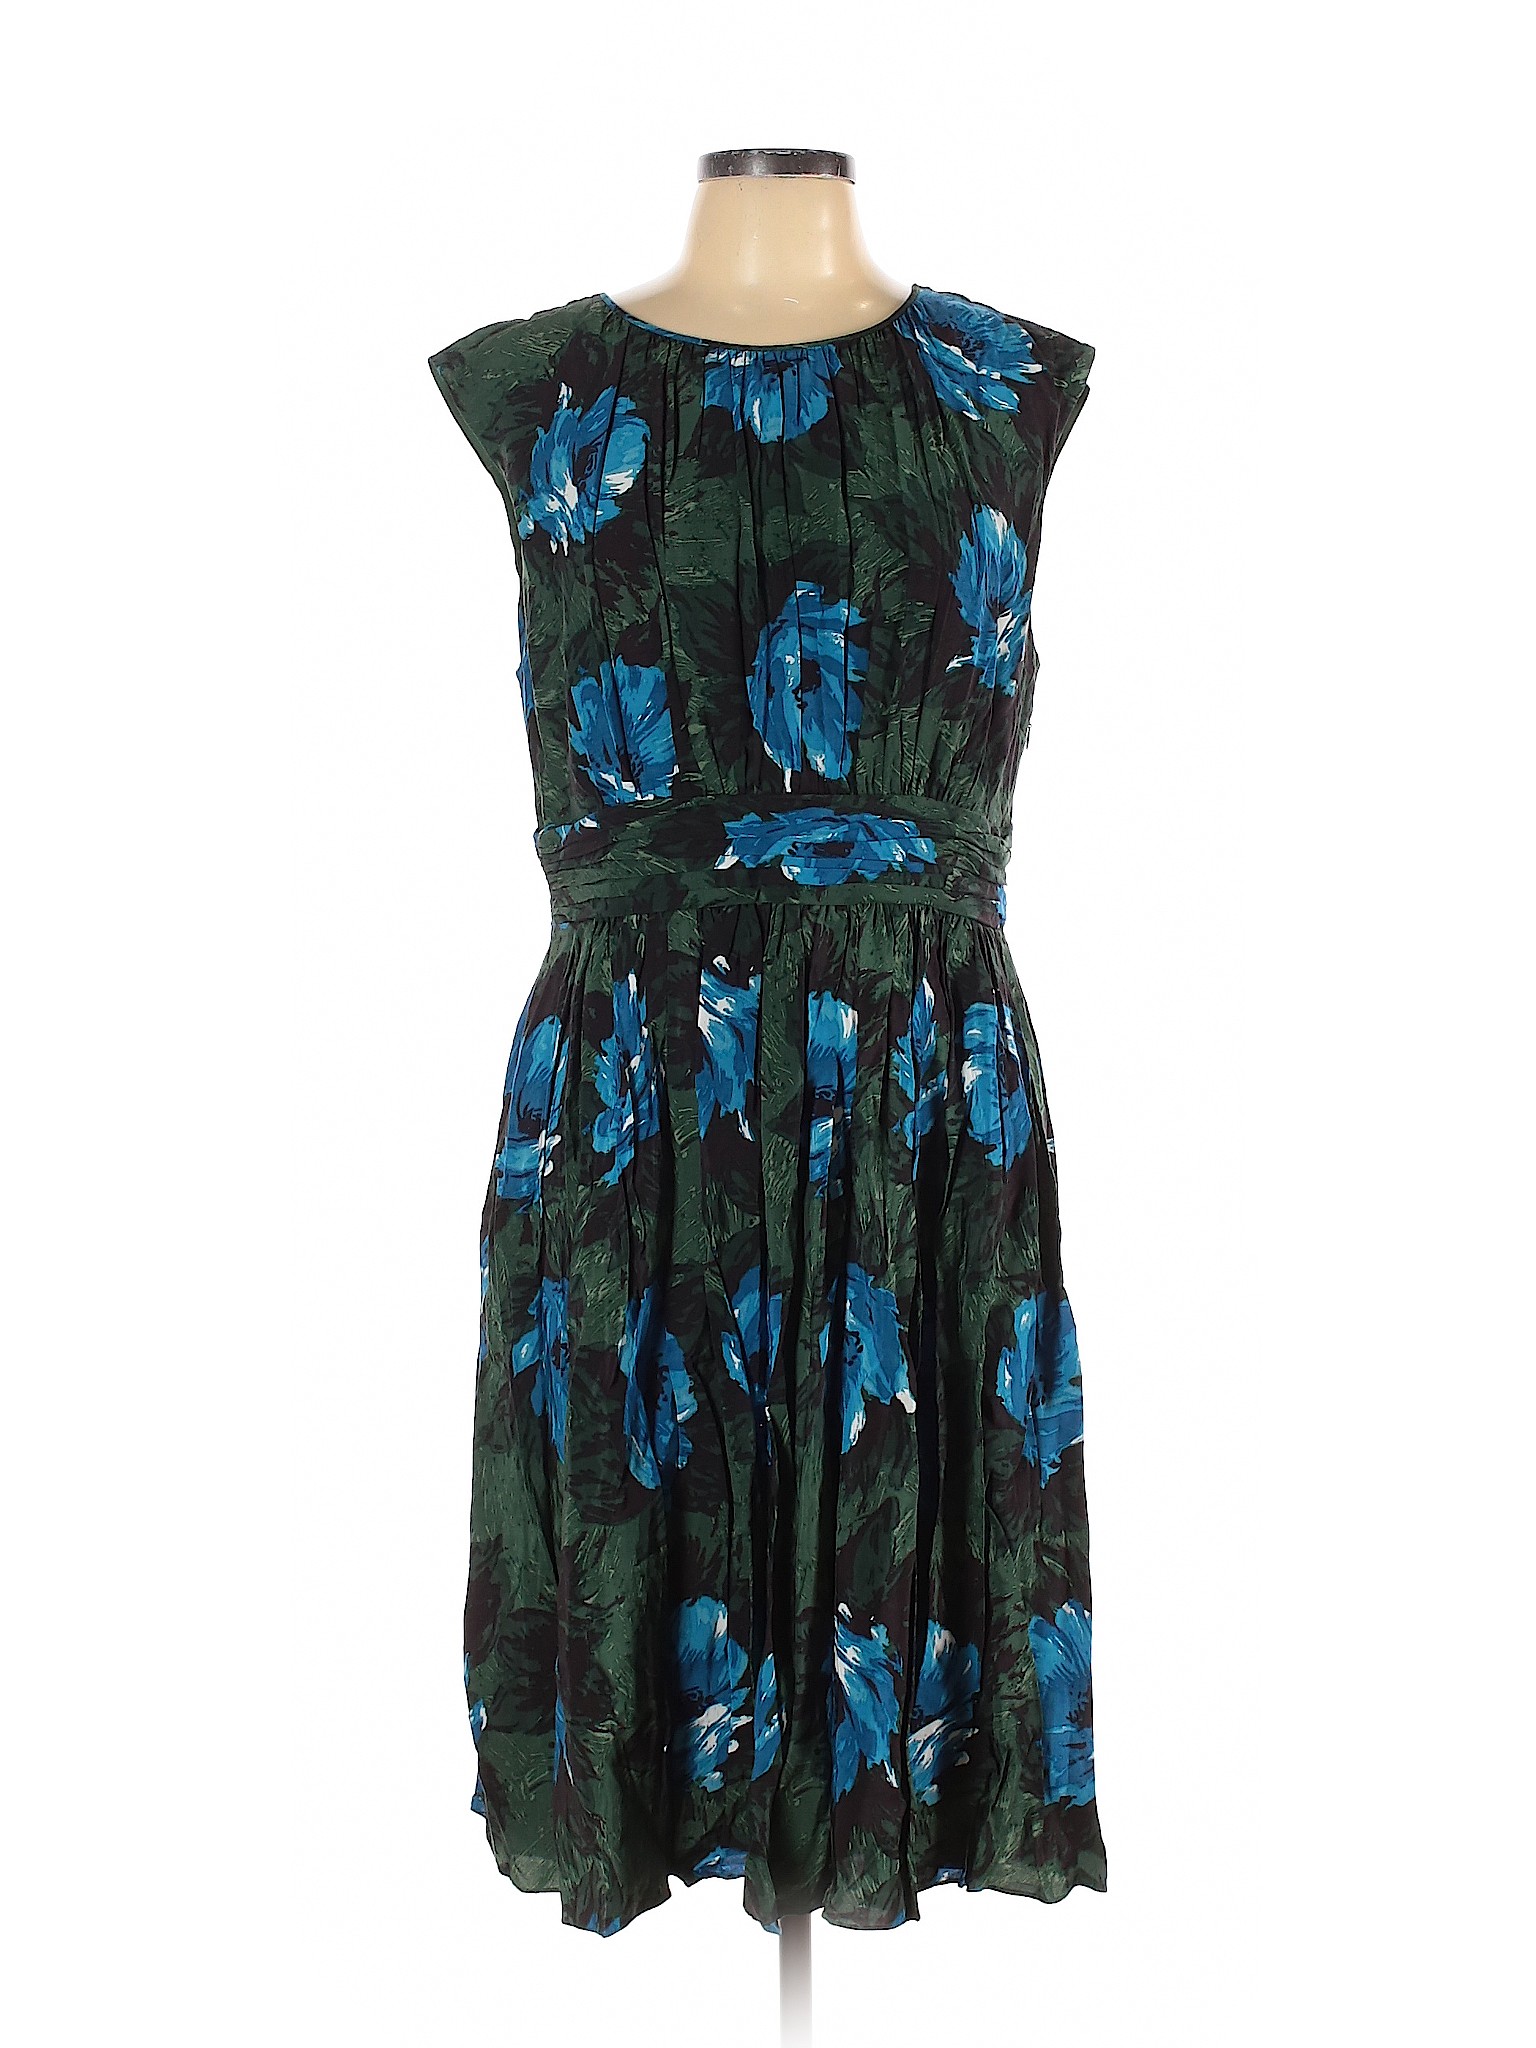 Boden Women Green Casual Dress 12 Tall | eBay